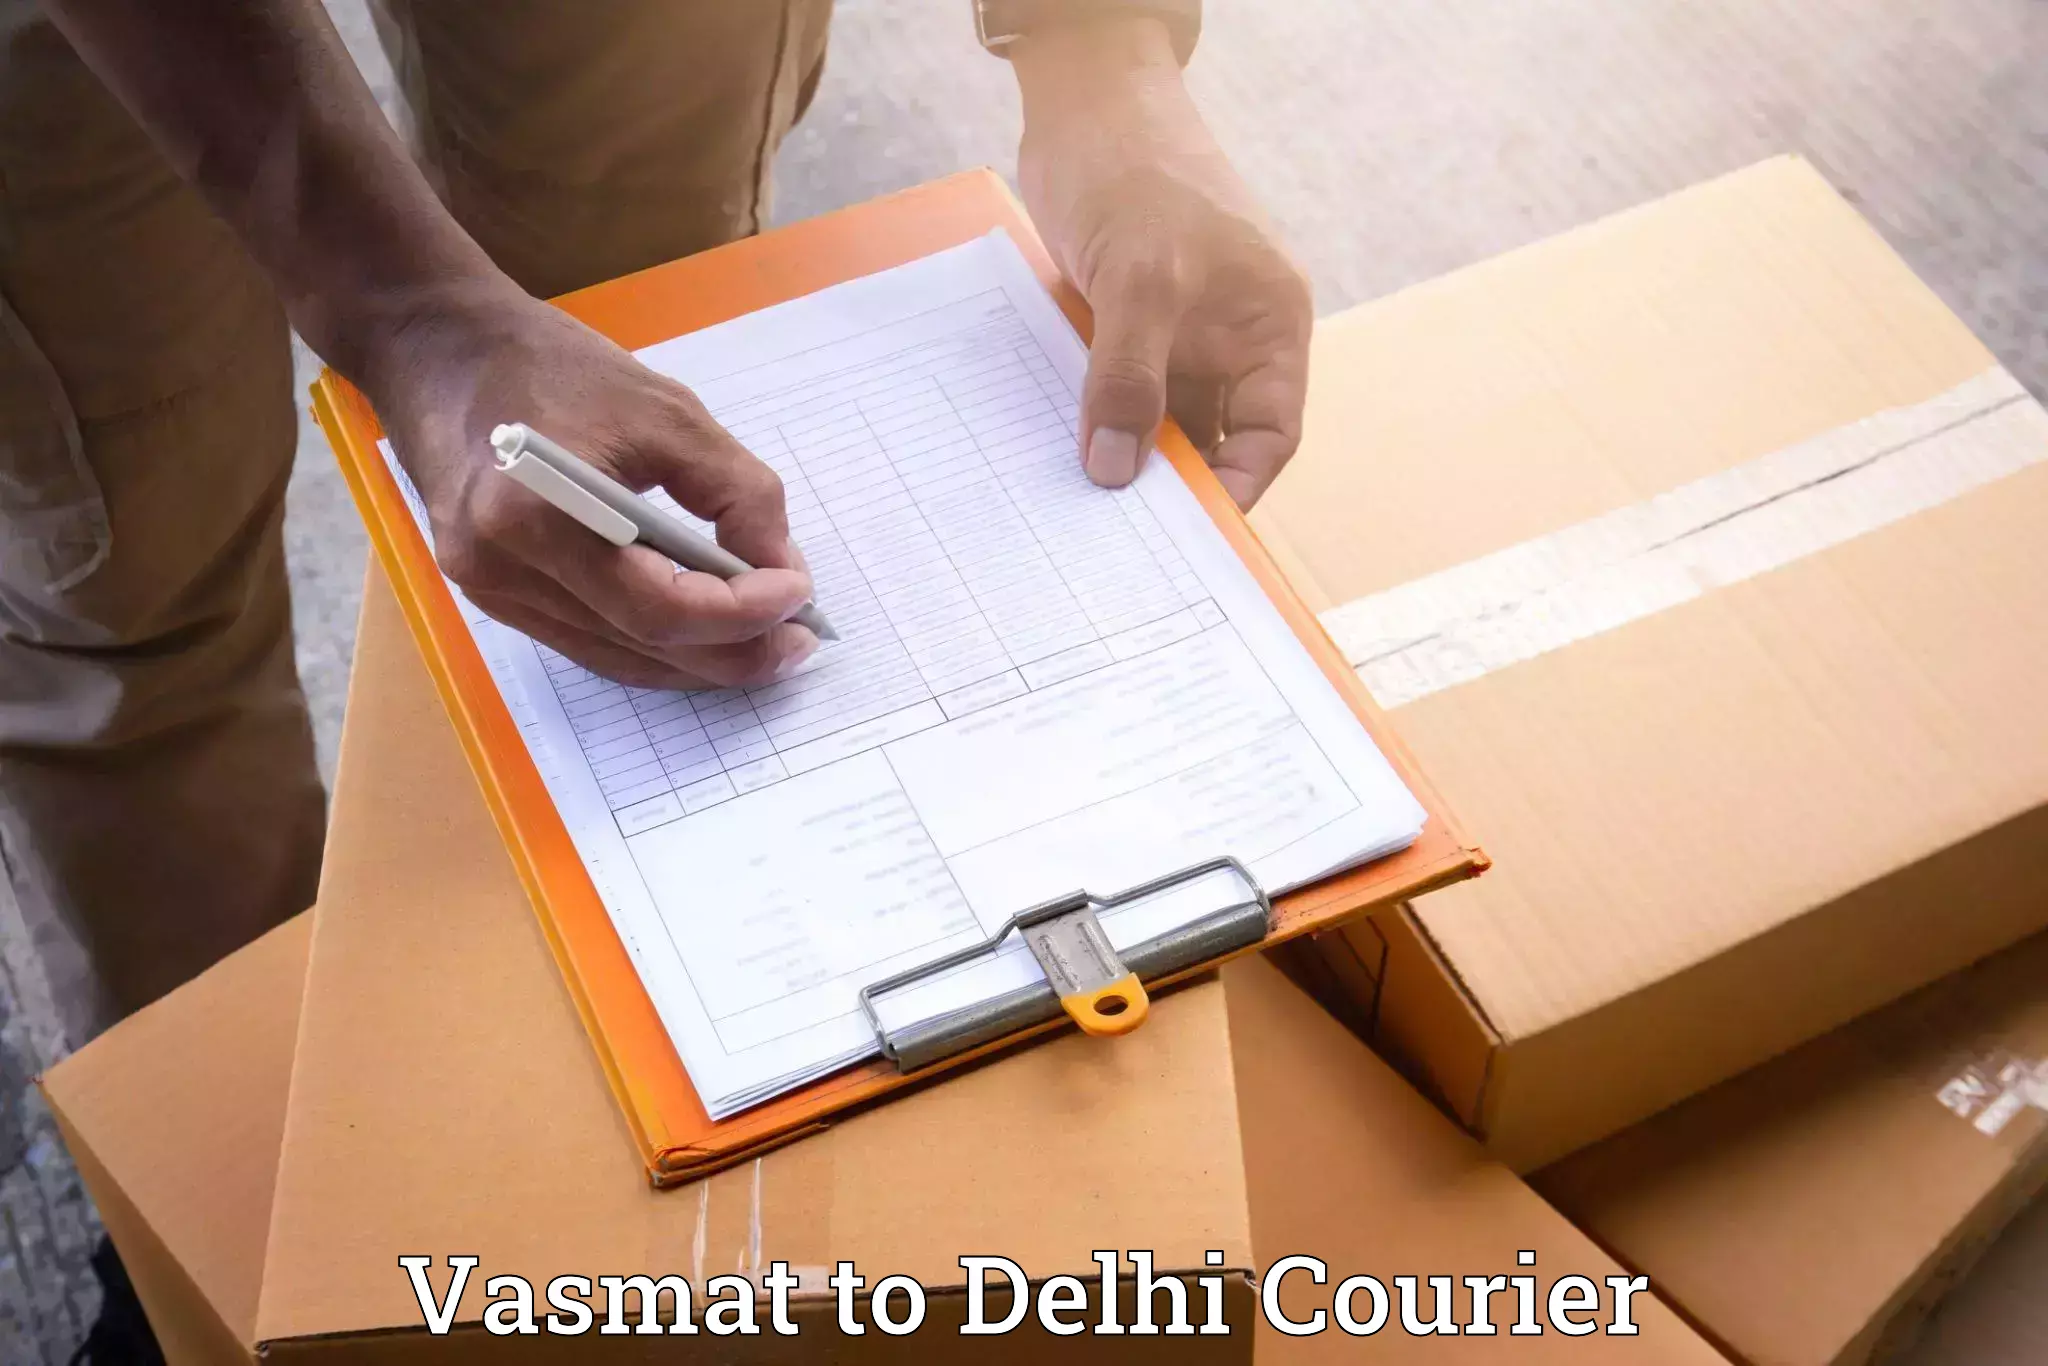 Furniture transport and logistics Vasmat to Delhi